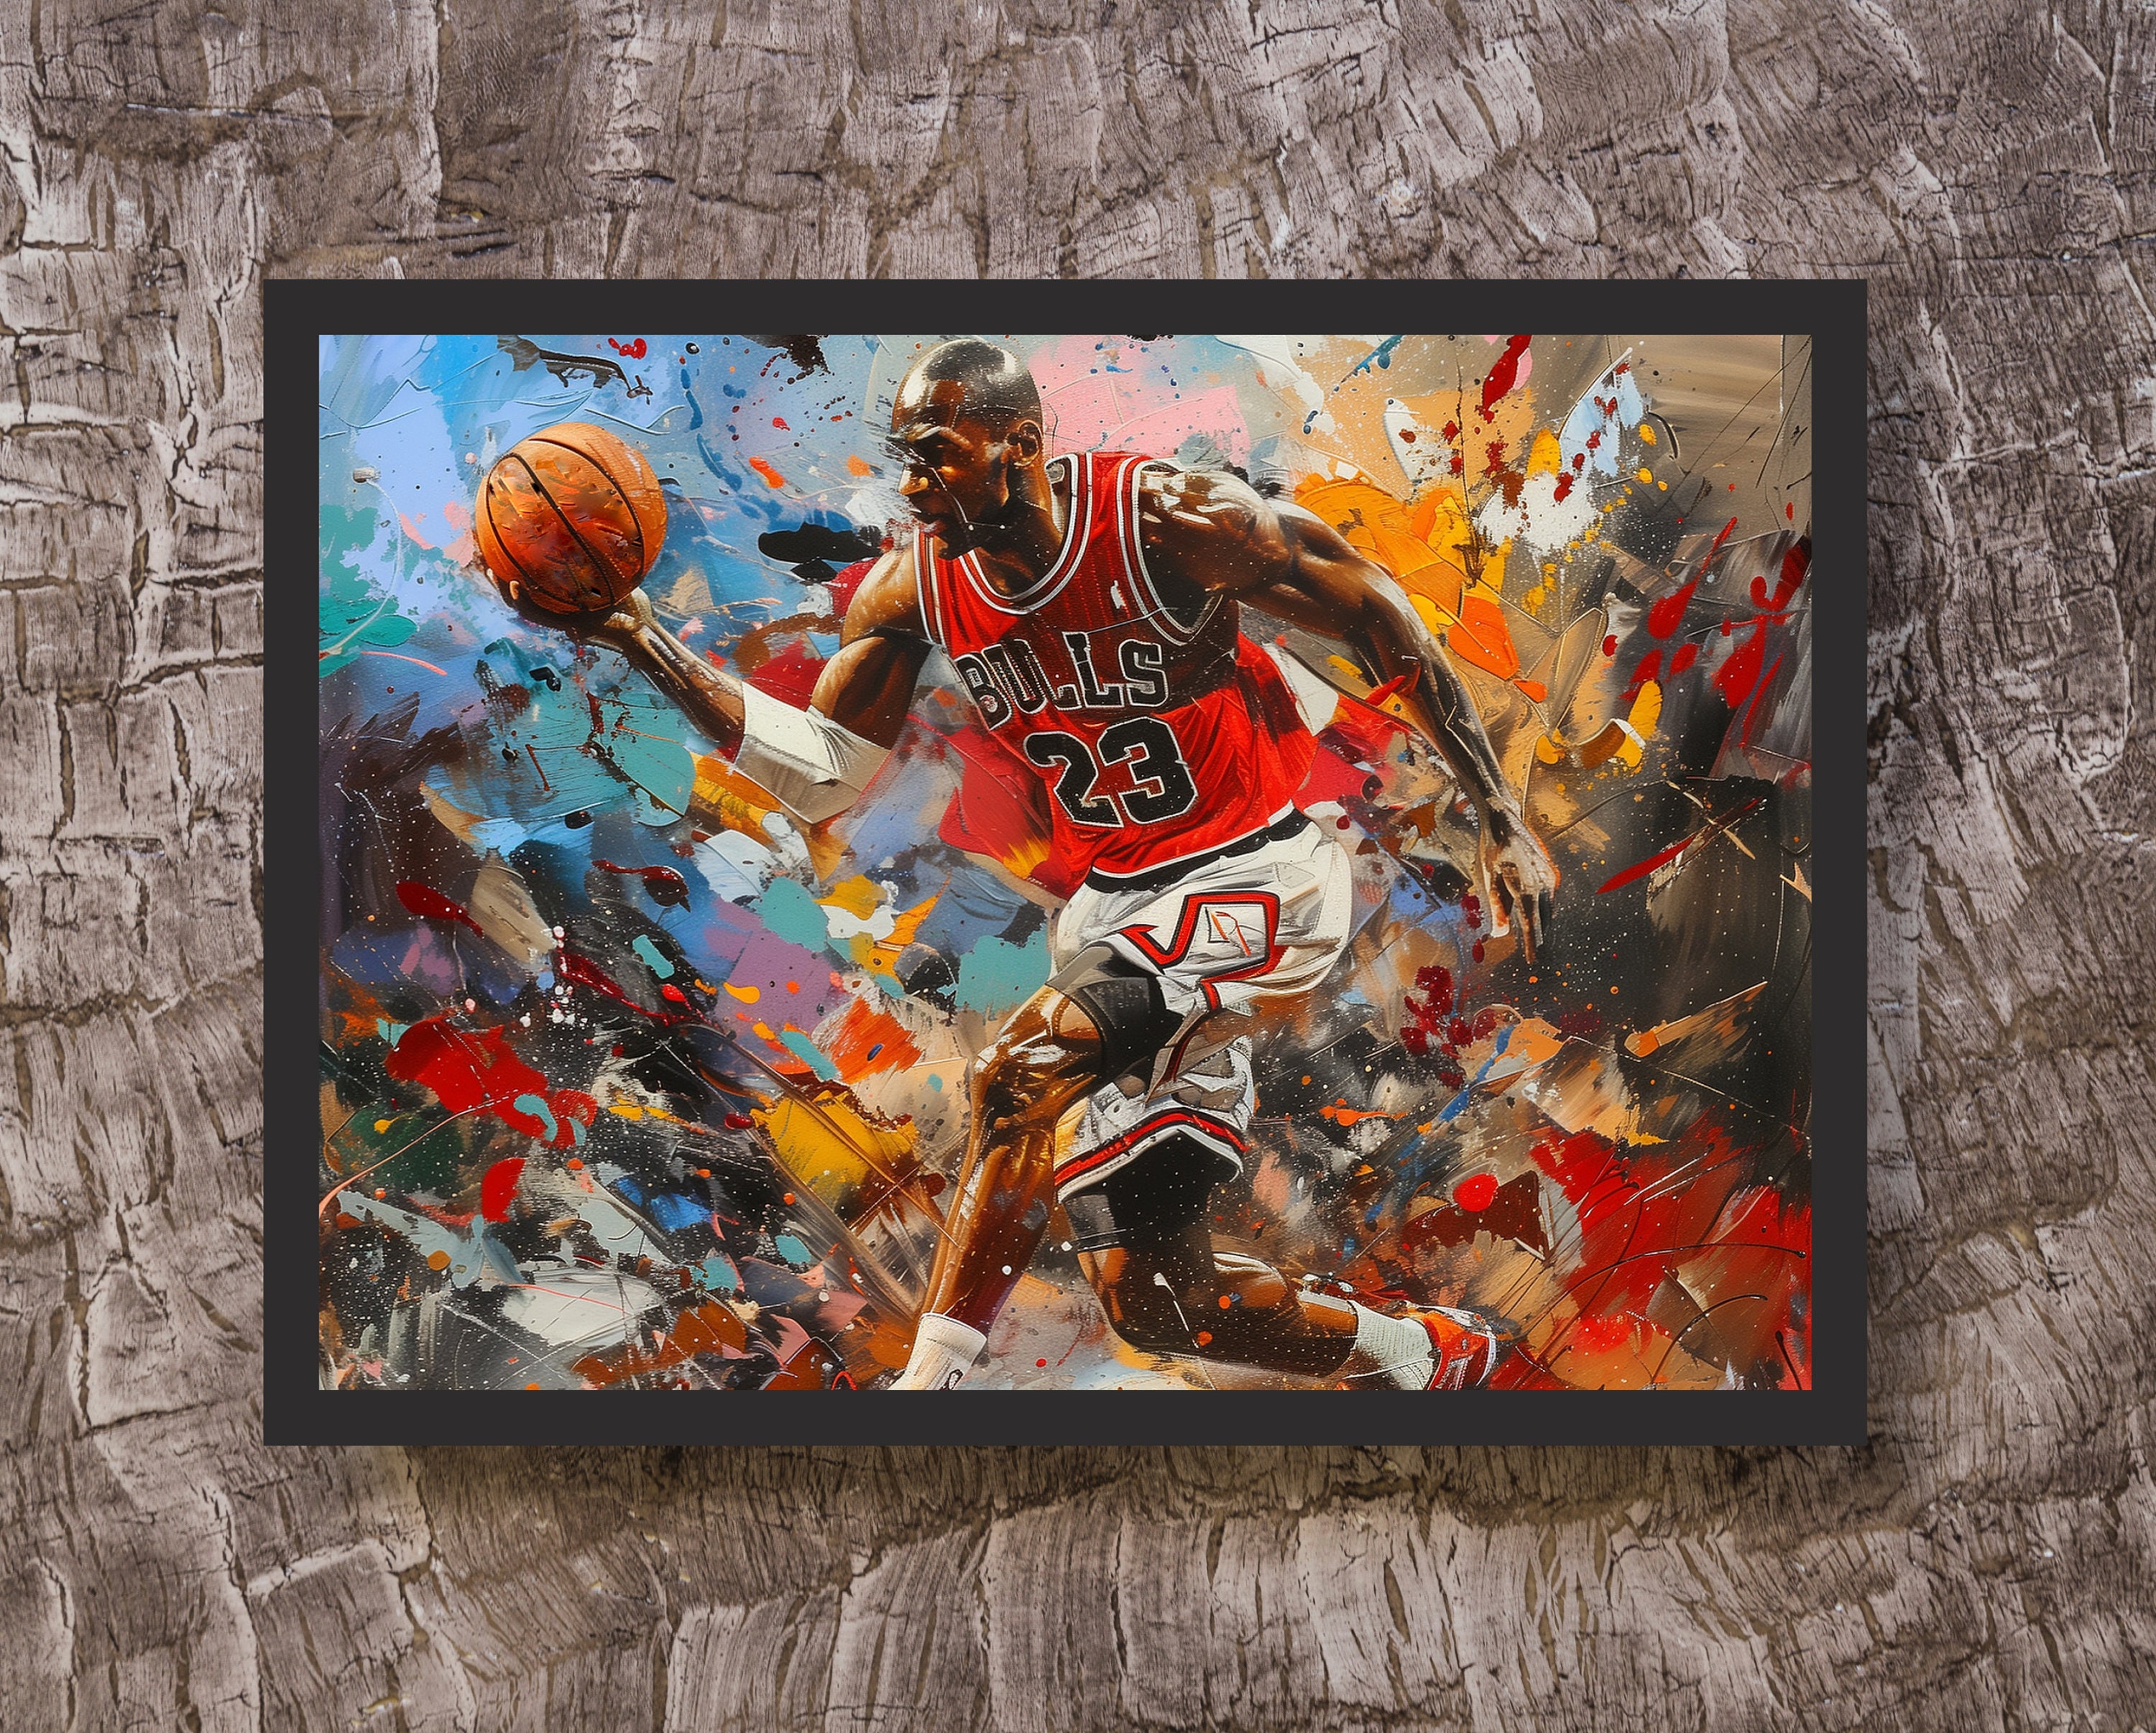 Michael Jordan Motivational Basketball Wall Art Poster